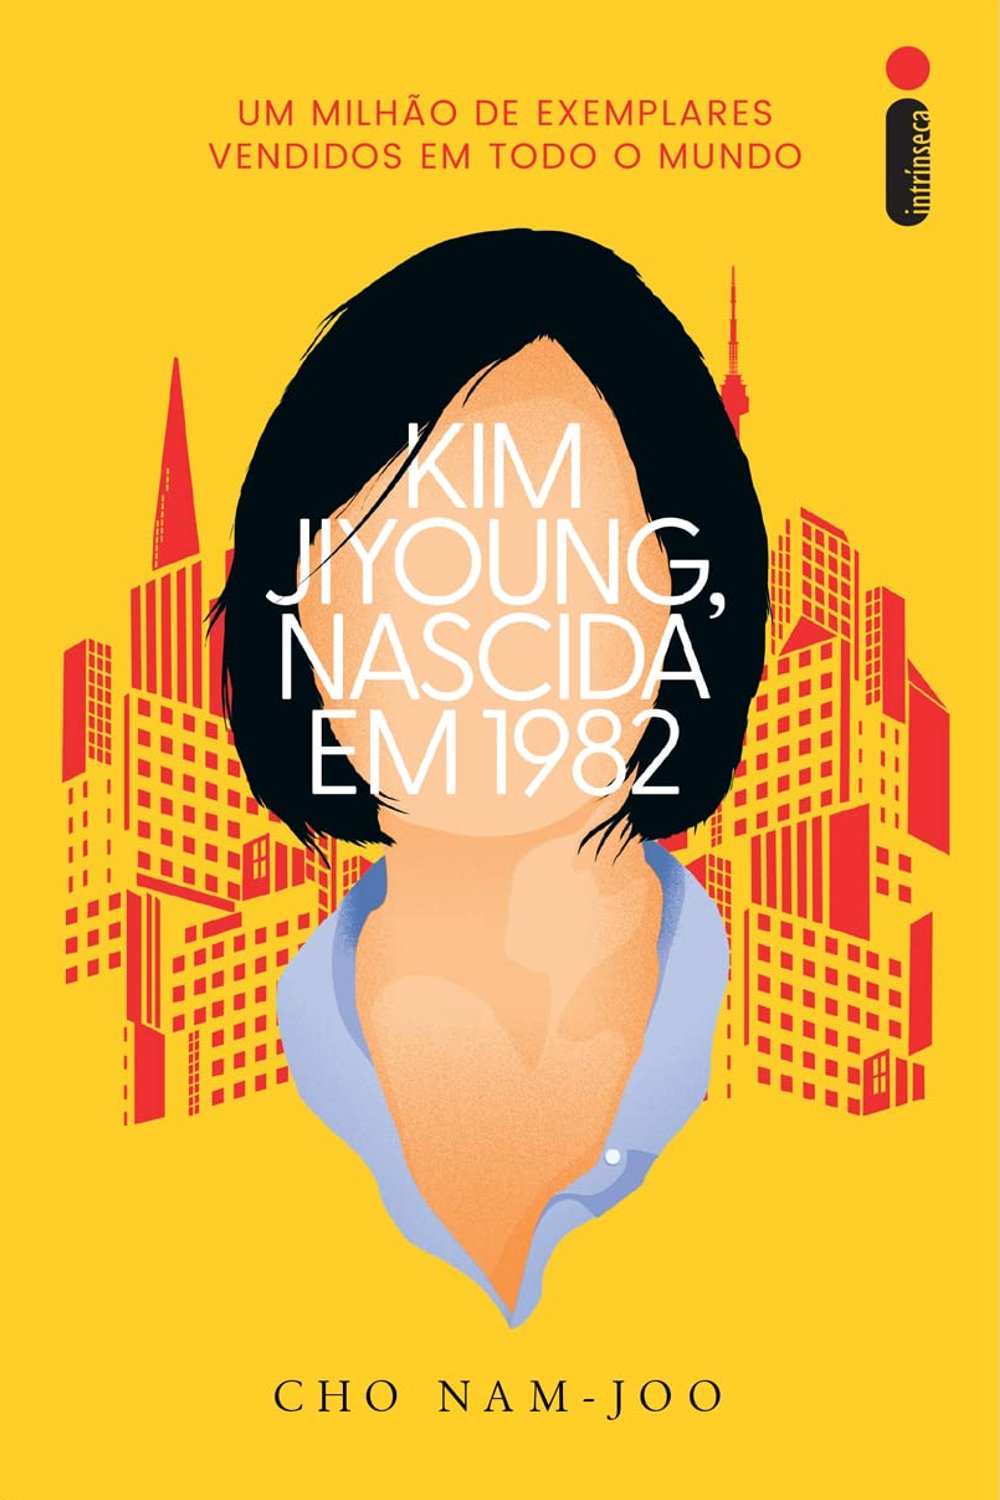 Kim Jiyoung, nascida em 1982  - livro - livros escritos por mulheres - dicas - estante - https://stealthelook.com.br